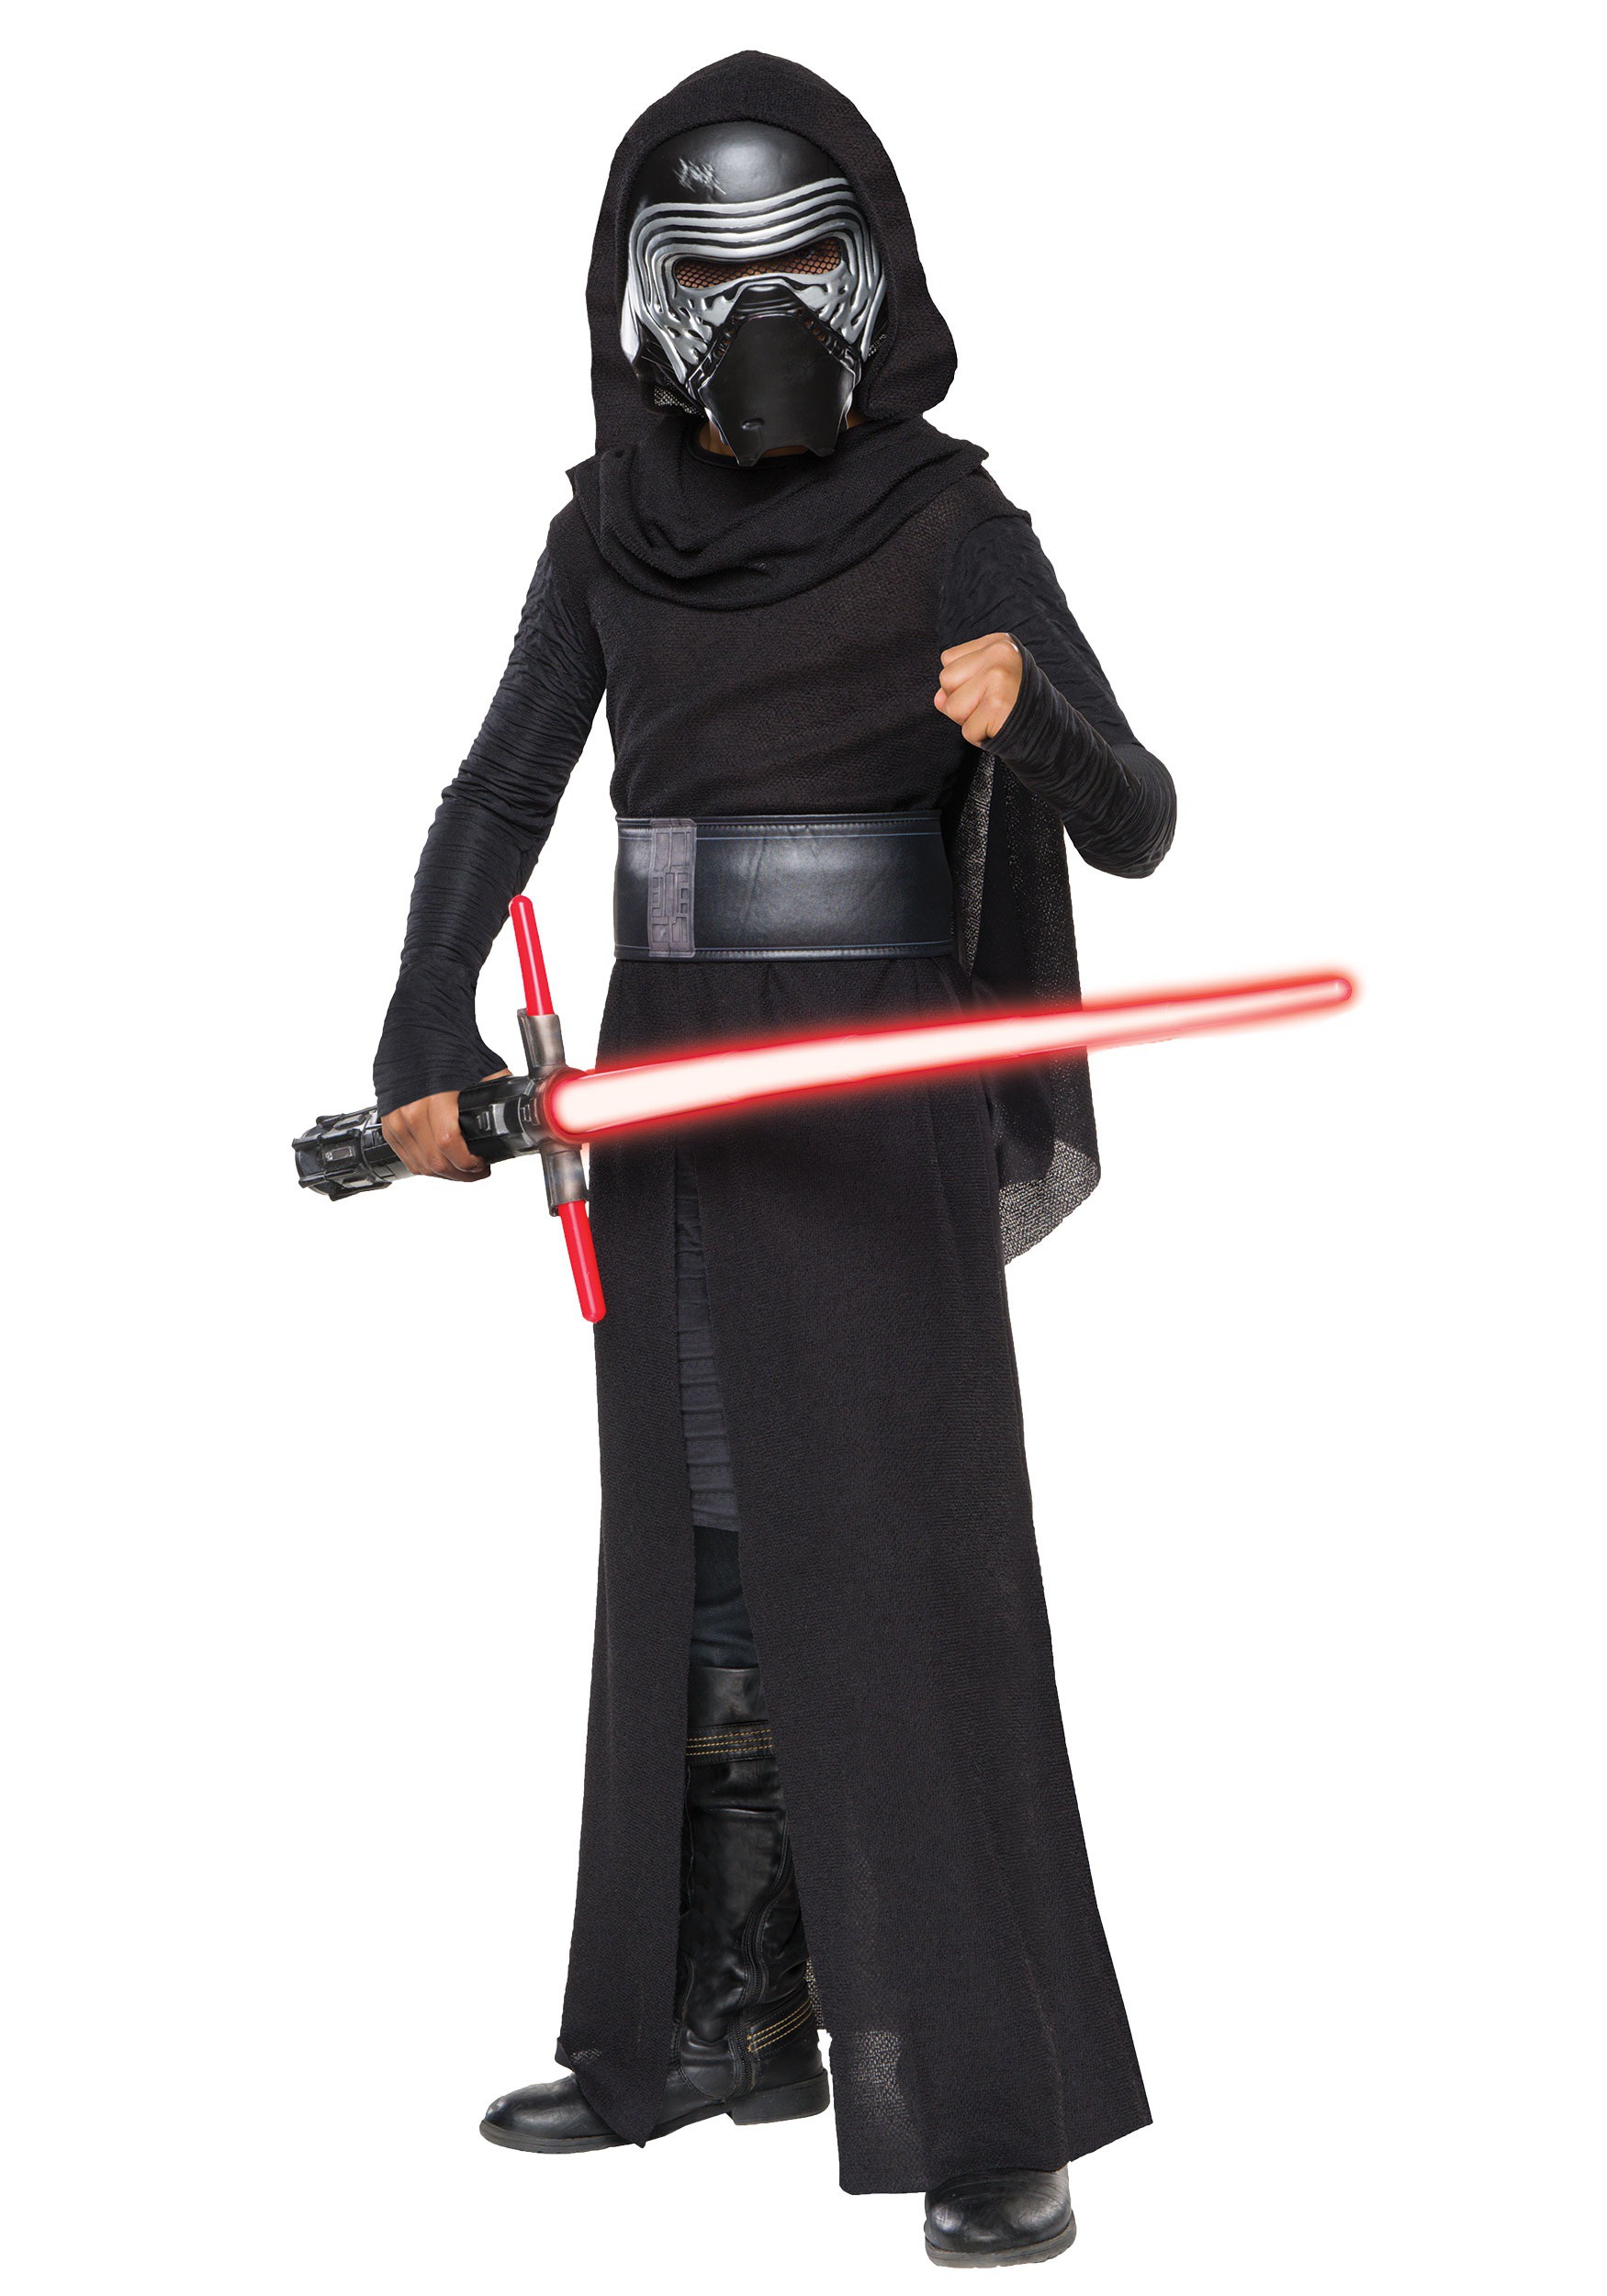 Kid’s Deluxe Star Wars The Force Awakens Kylo Ren Costume